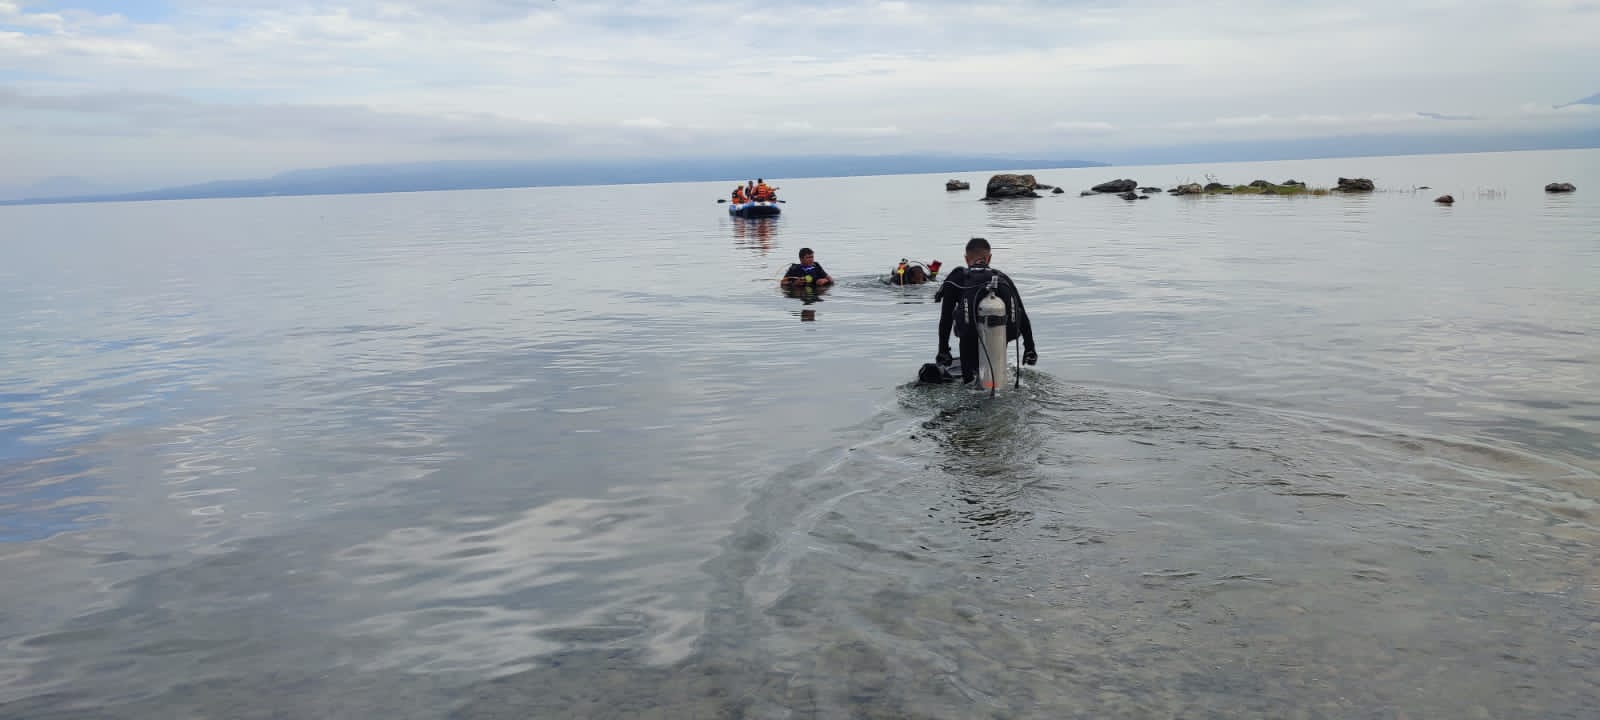 Berenang di Danau Toba, Pemuda Ditemukan Tewas Tenggelam